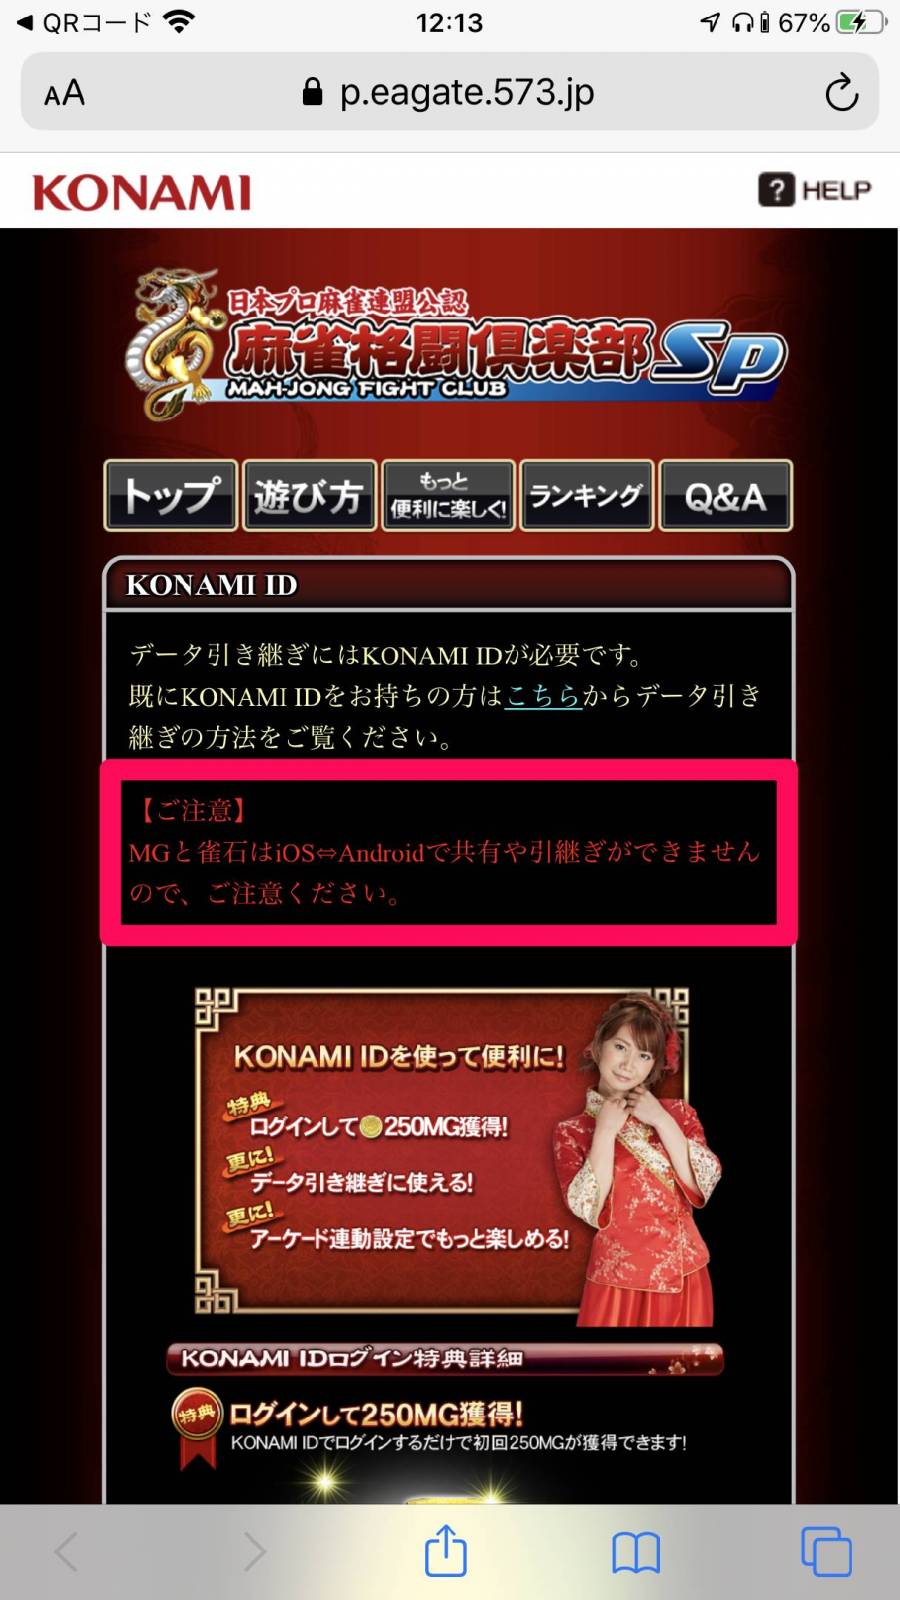 『麻雀格闘倶楽部Sp』公式サイト、KONAMI ID解説ページ